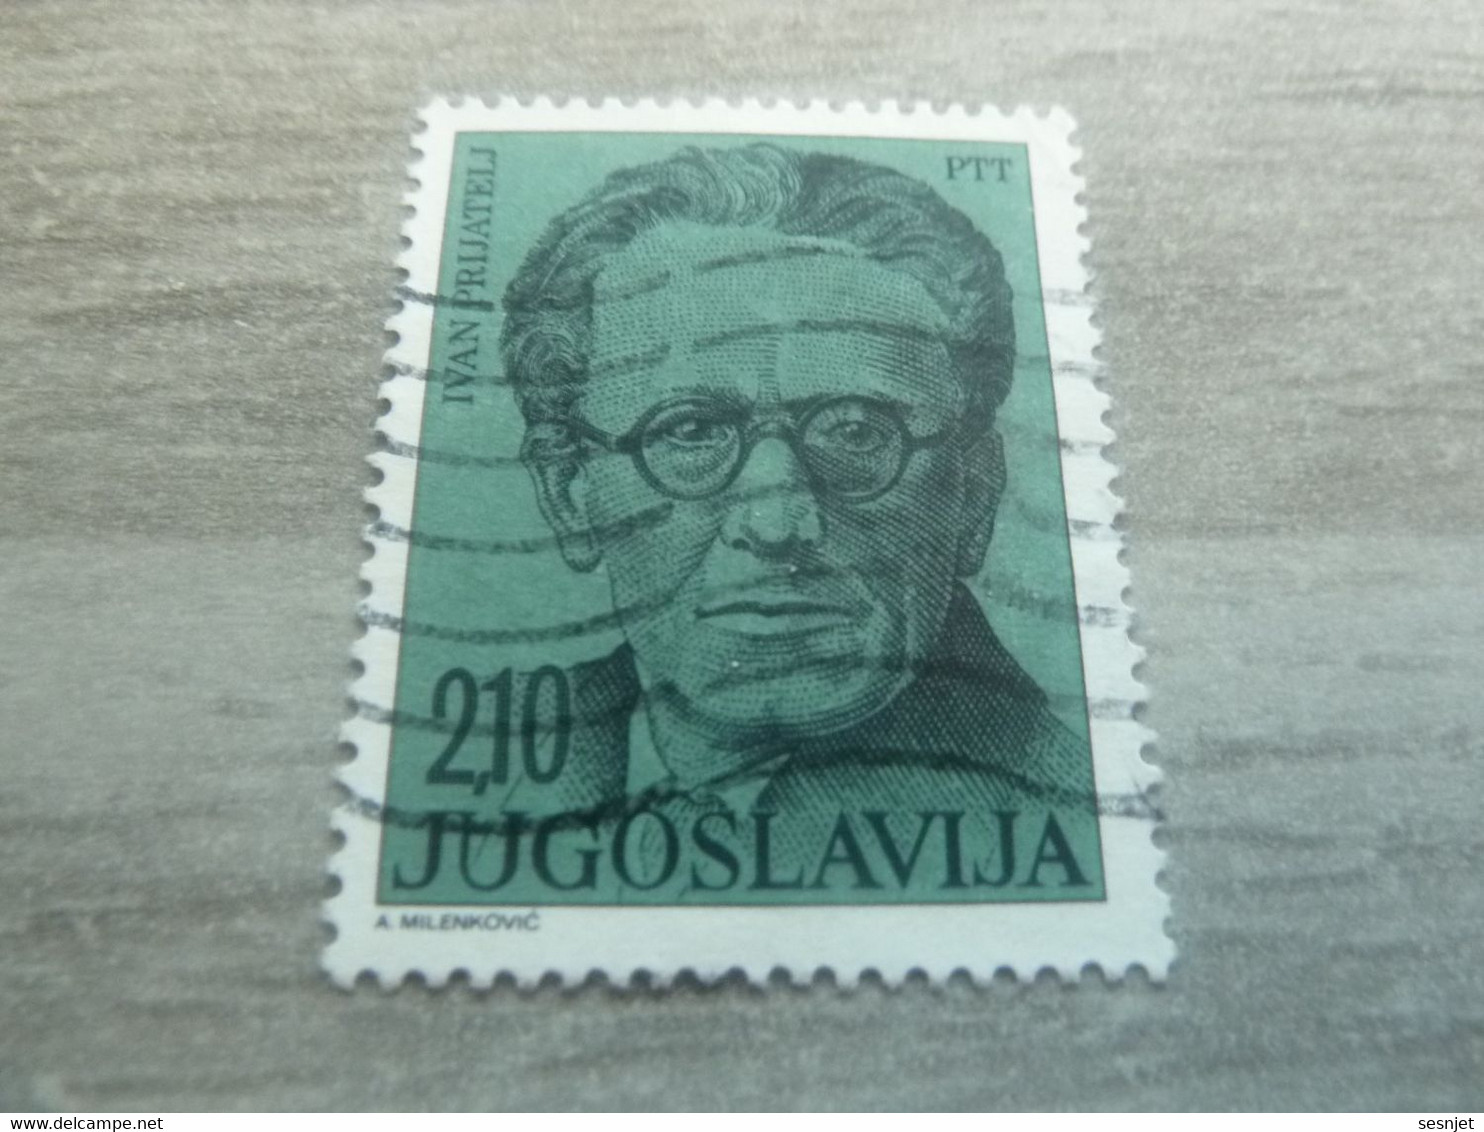 Ptt - Jugoslavija - Ivan Prijatelj - Val 2.10 - Bleu-vert - Oblitéré - - Oblitérés